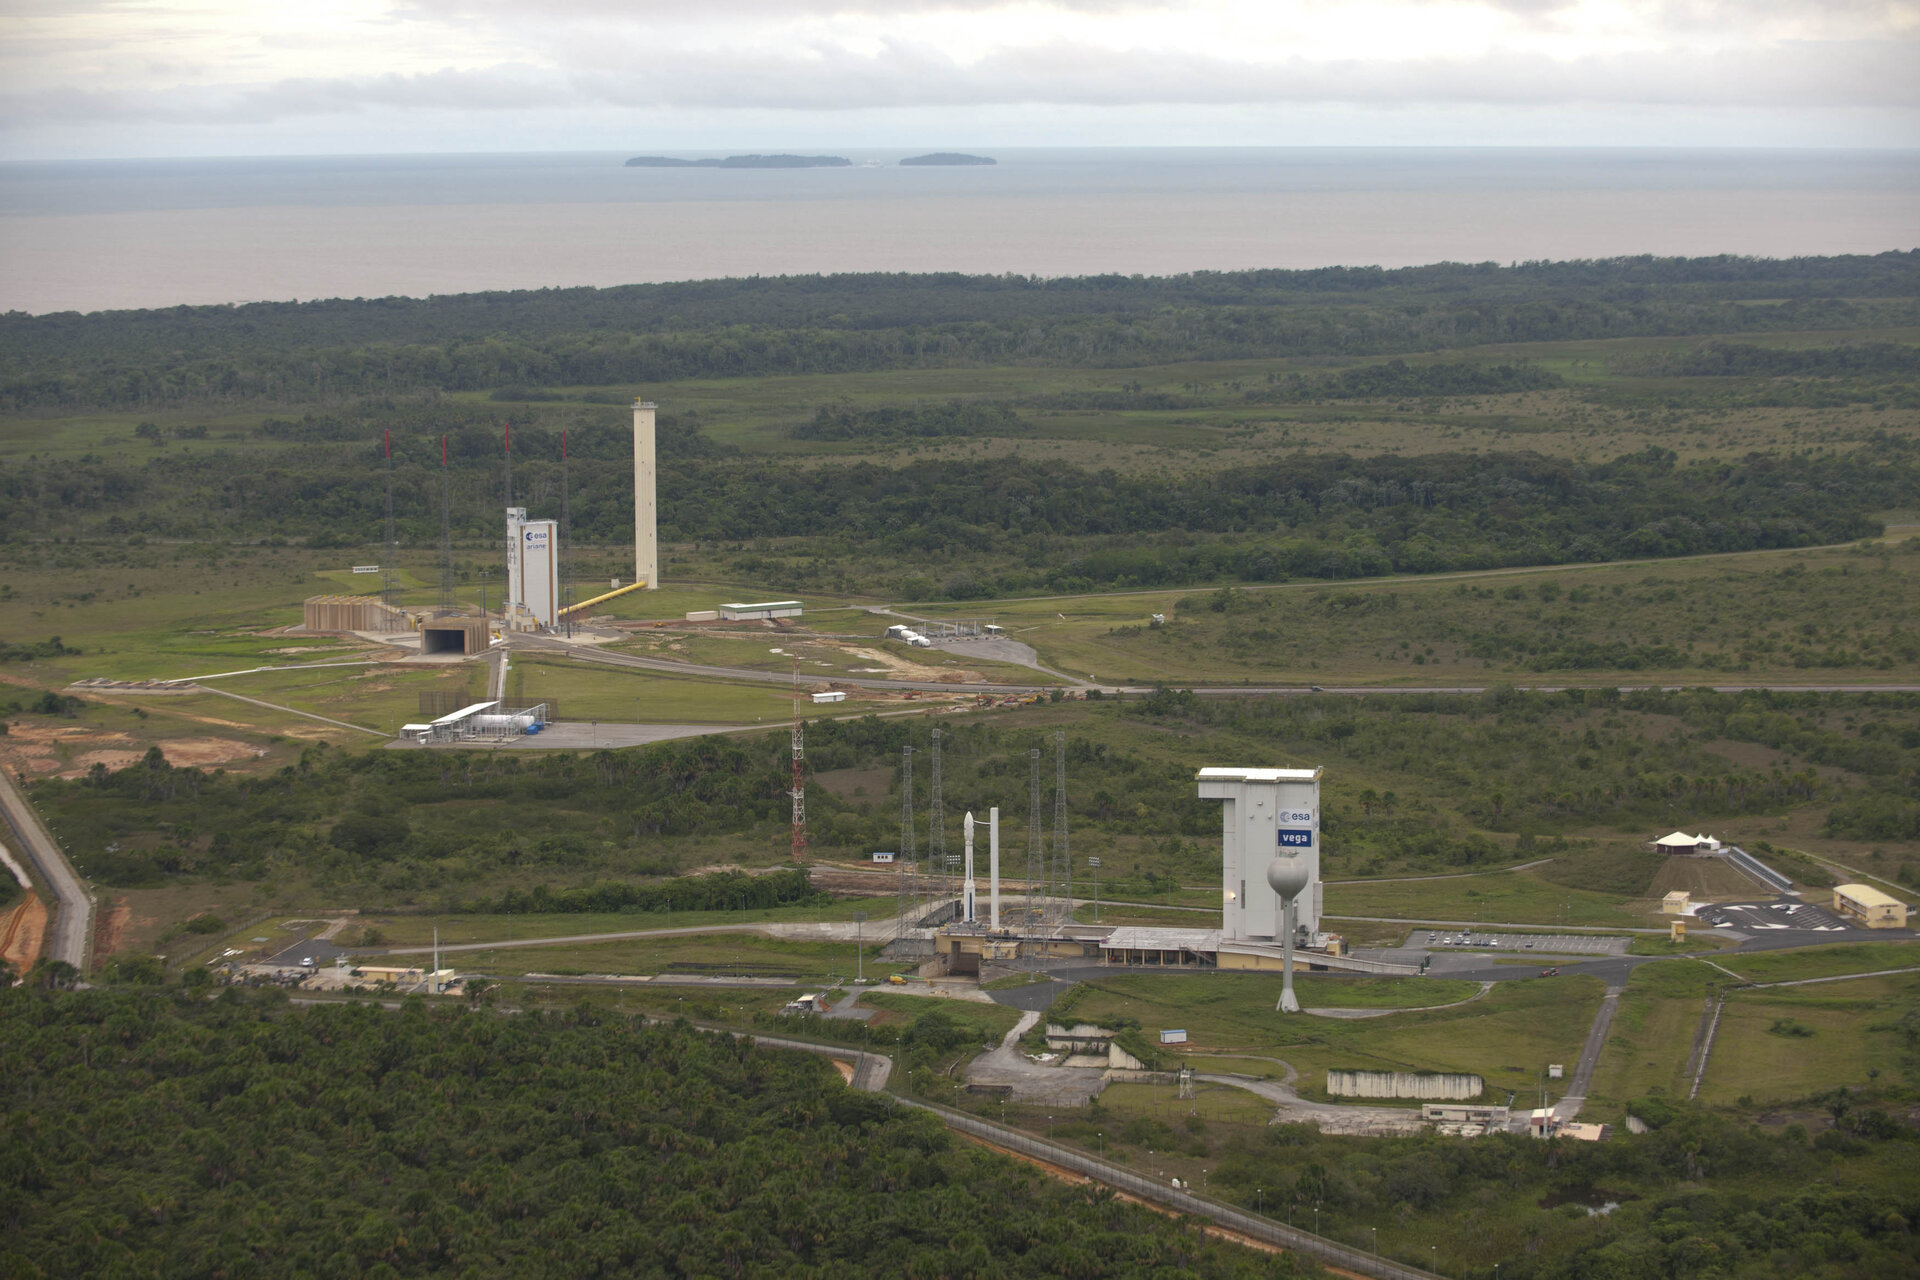 Vega and Ariane launch sites